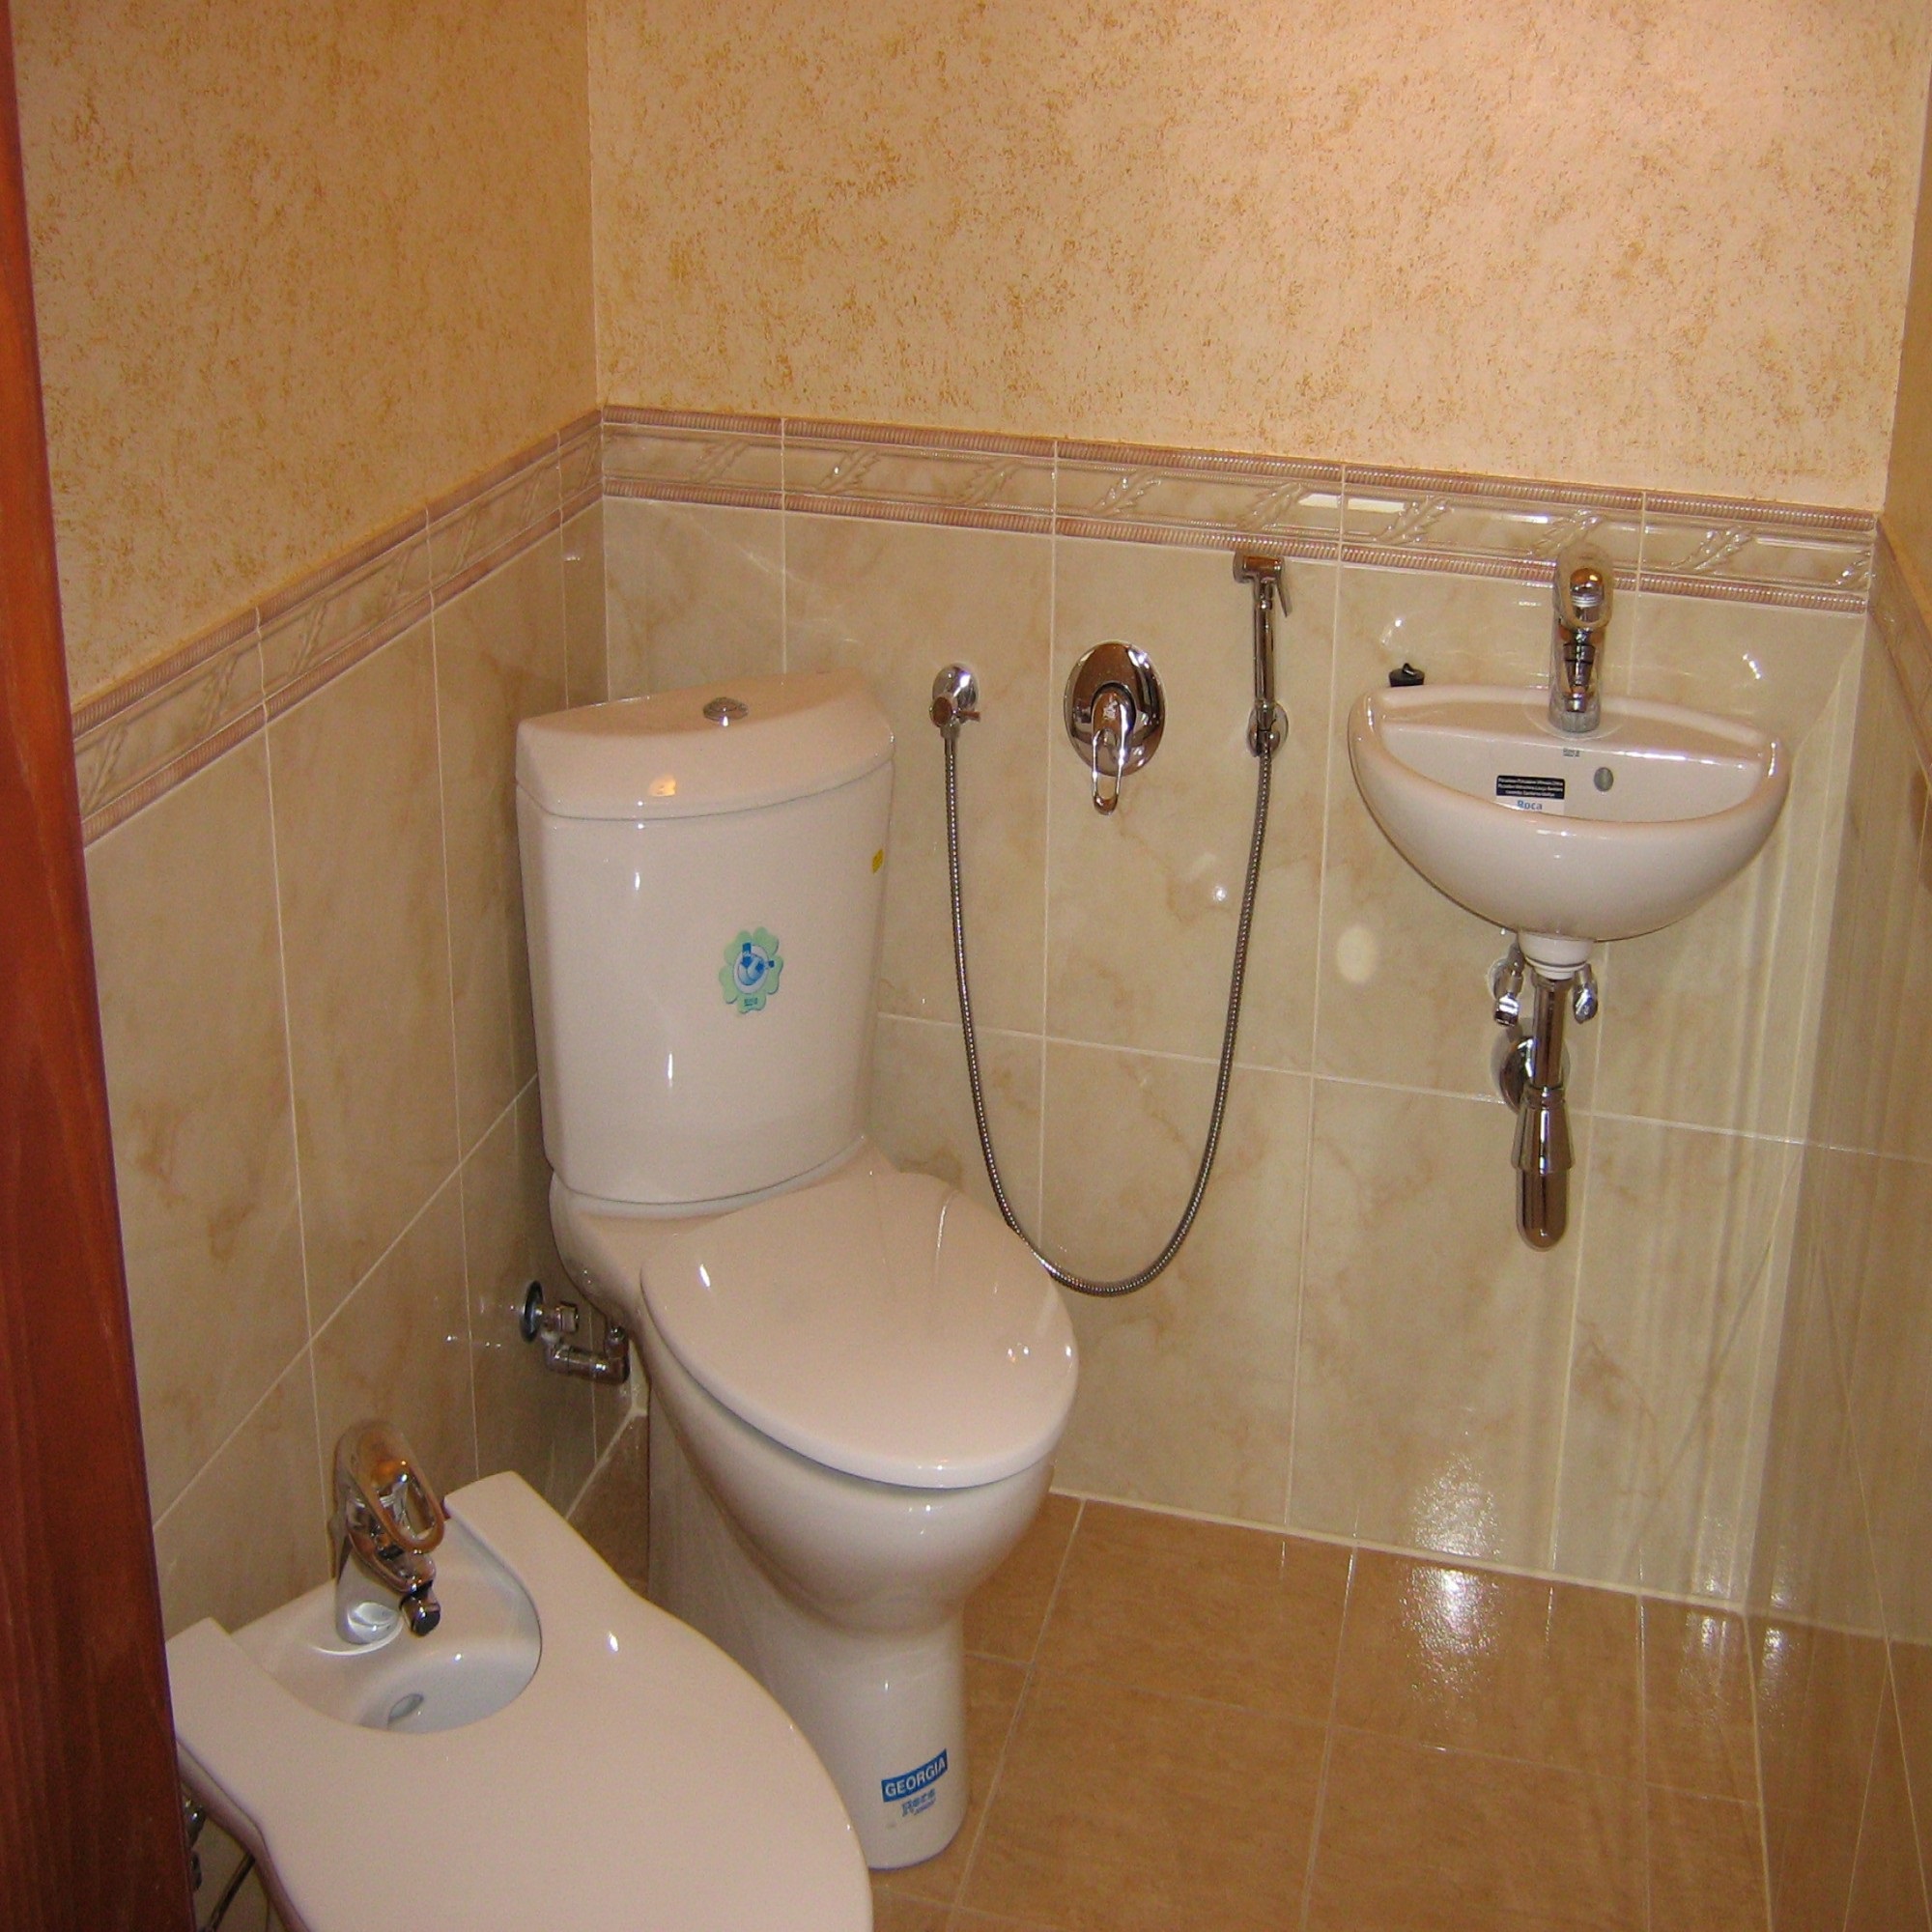 Un exemple de style lumineux d'une salle de bain de couleur beige